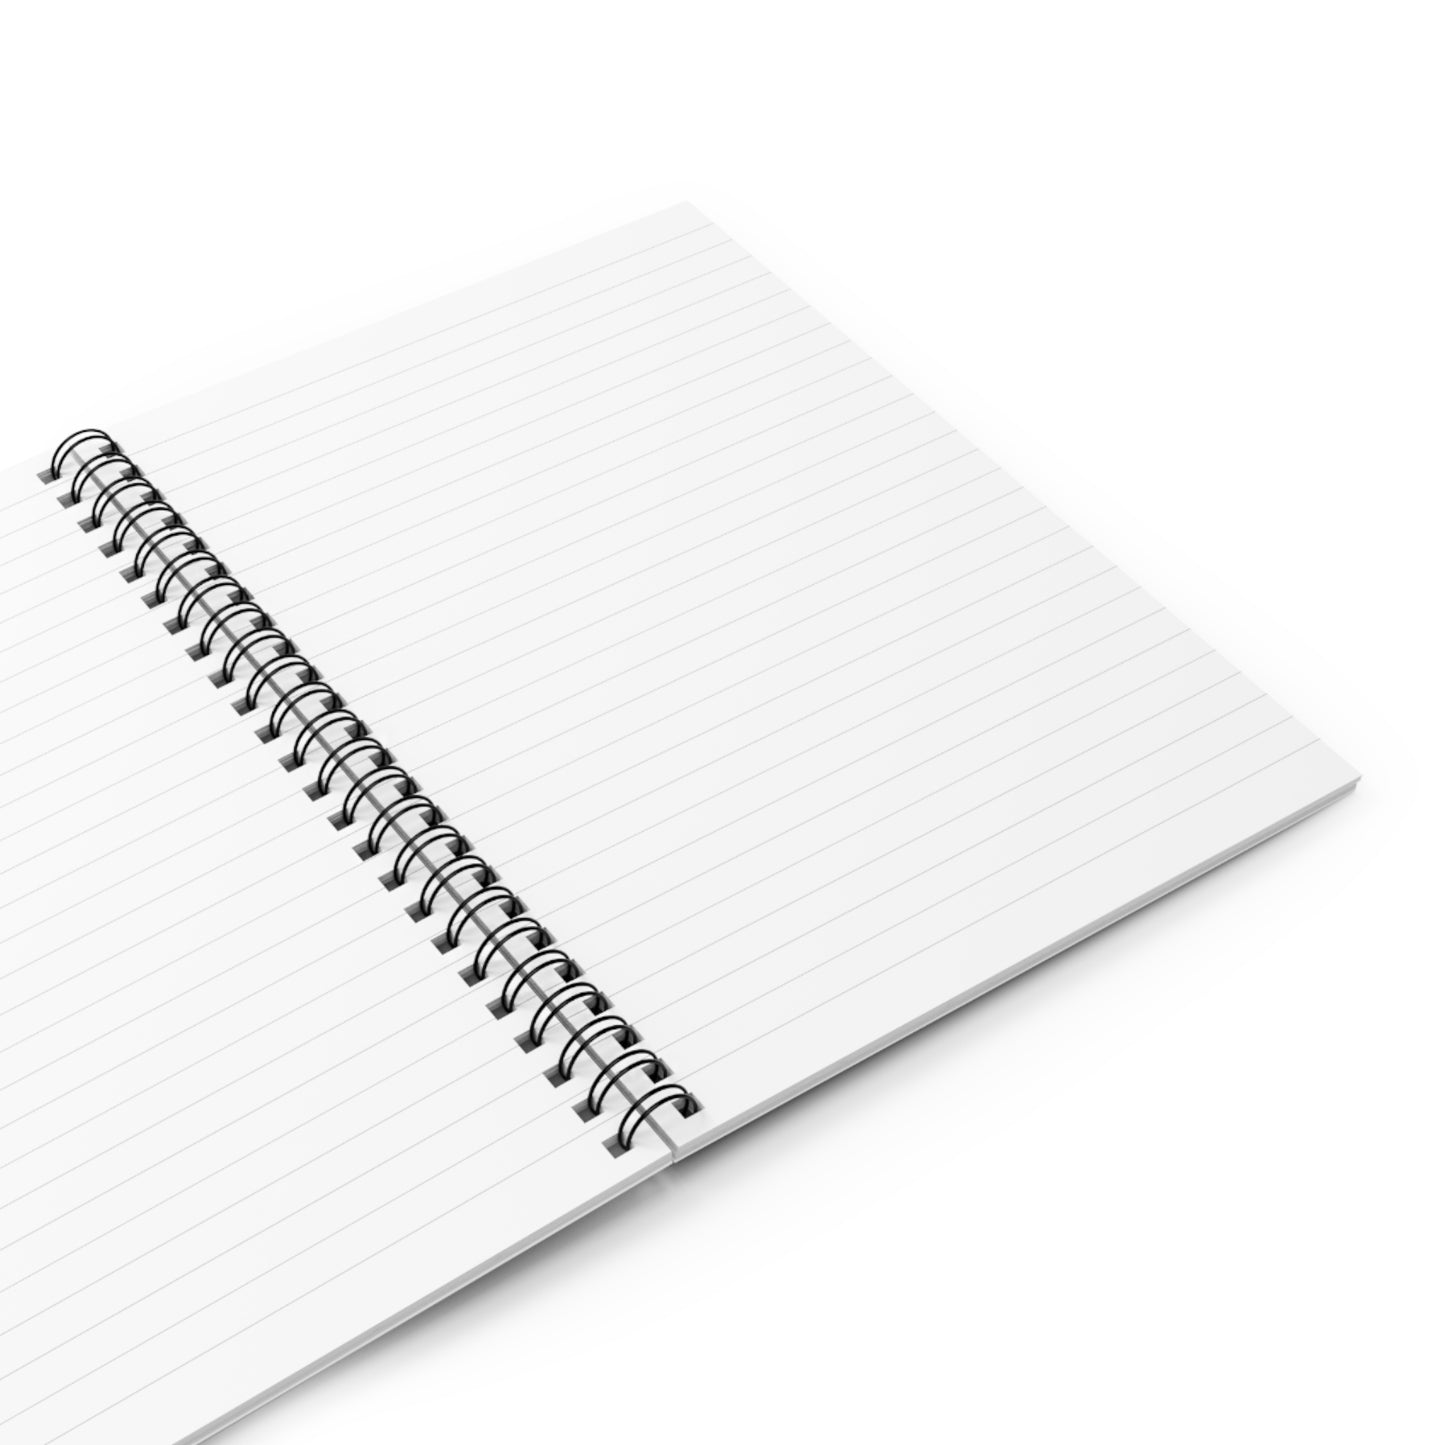 Goal Digger Spiral Notebook - Ruled Line